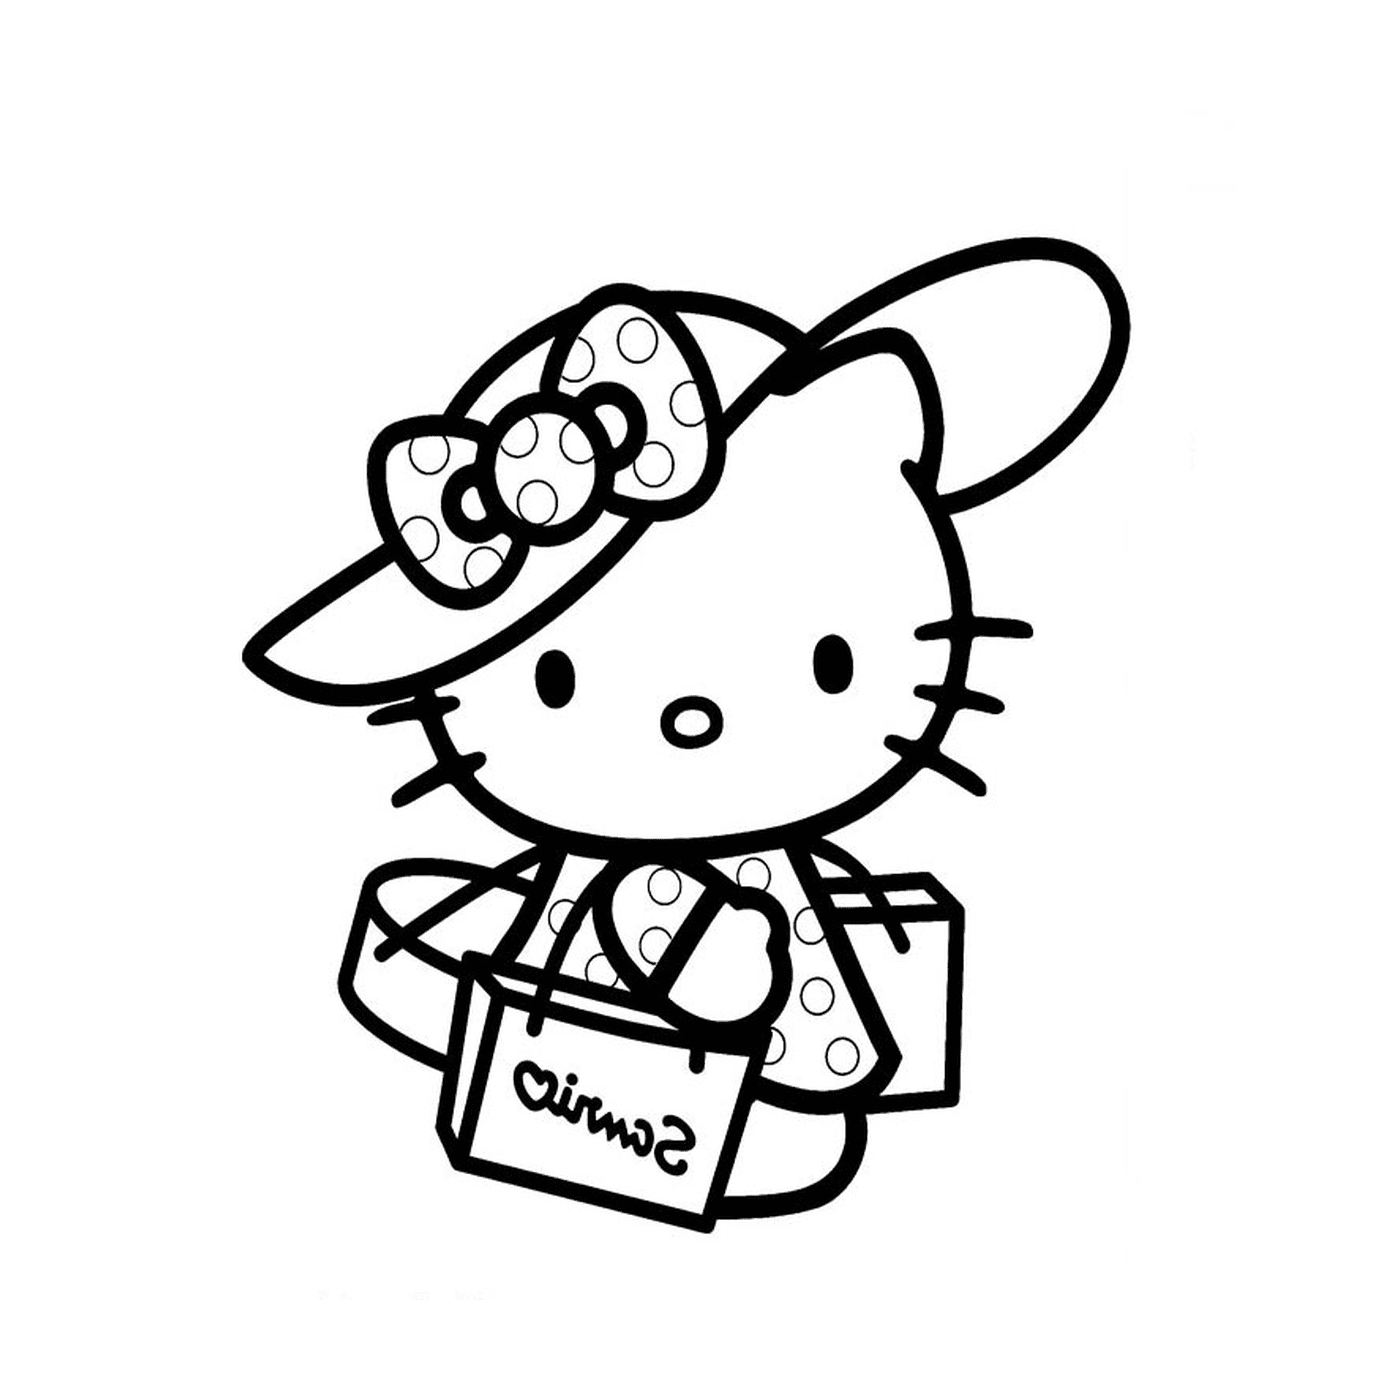  Hola Kitty de vacaciones con un sombrero y una bolsa 